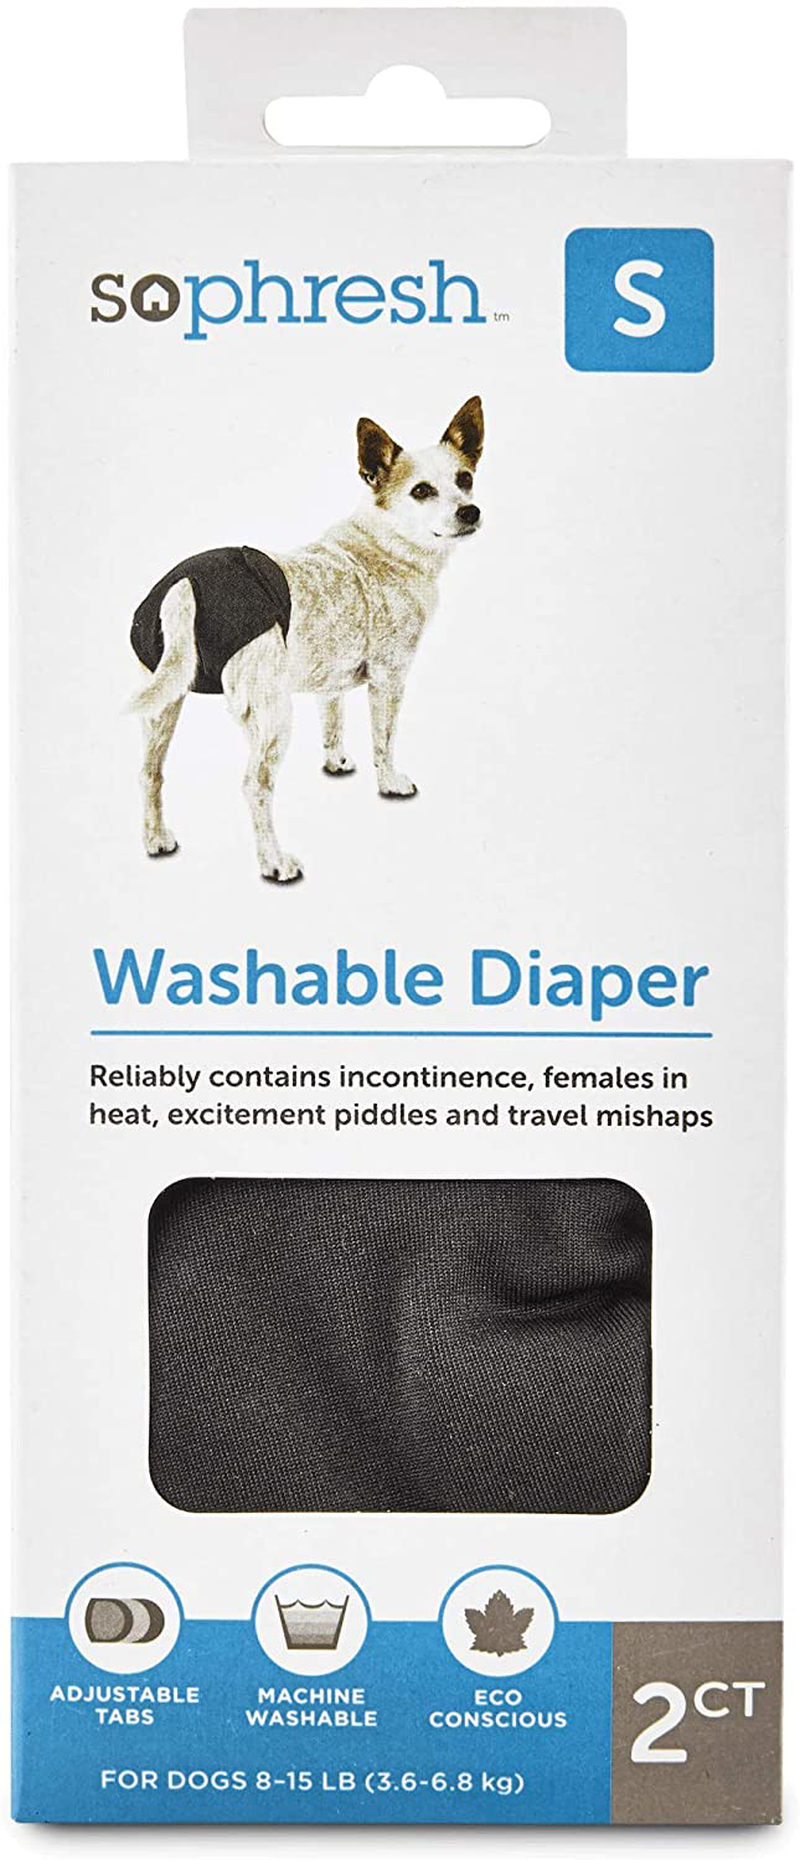 Petco Brand - so Phresh Washable Diaper for Dogs, Small